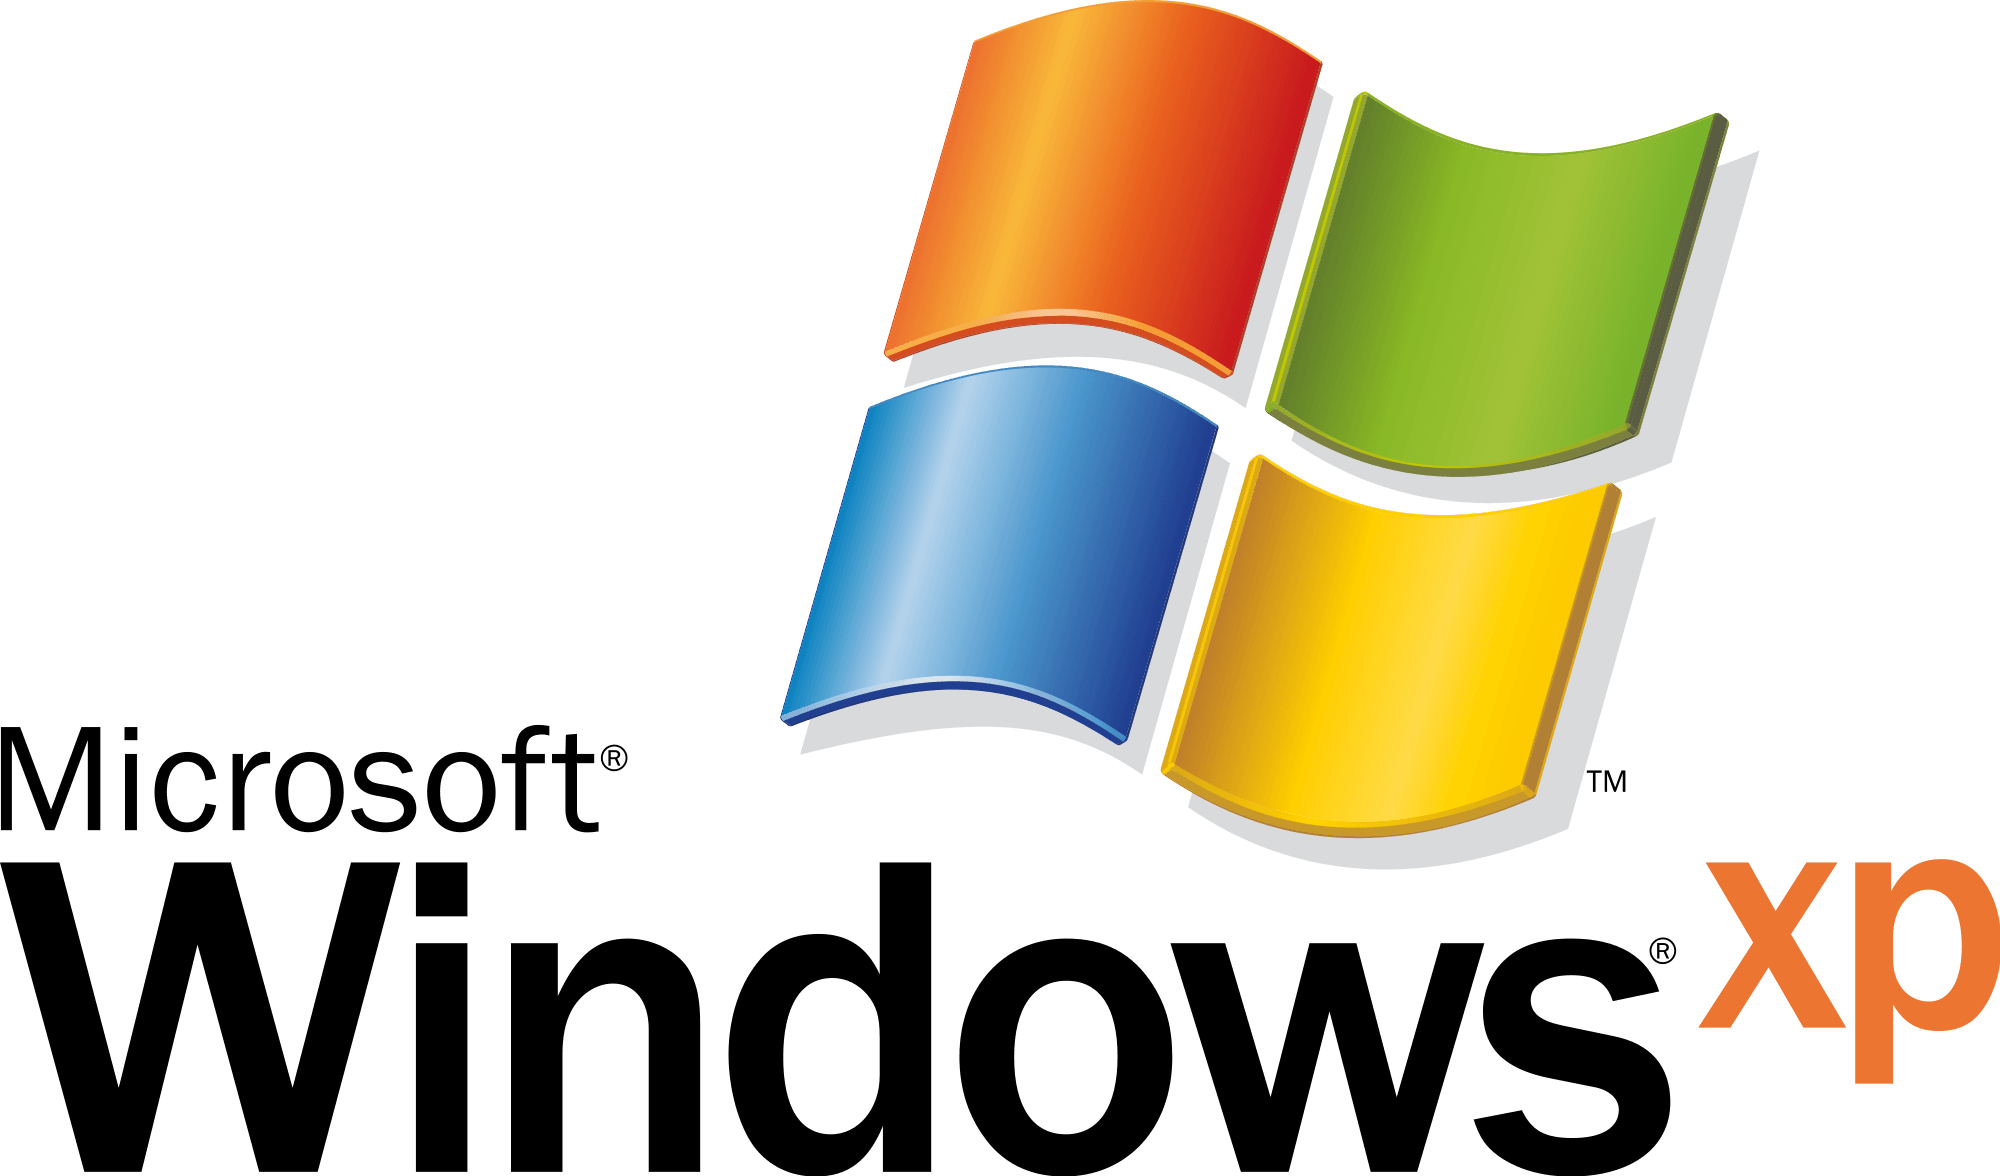 Windows Versions Logo - Windows logos PNG images free download, windows logo PNG